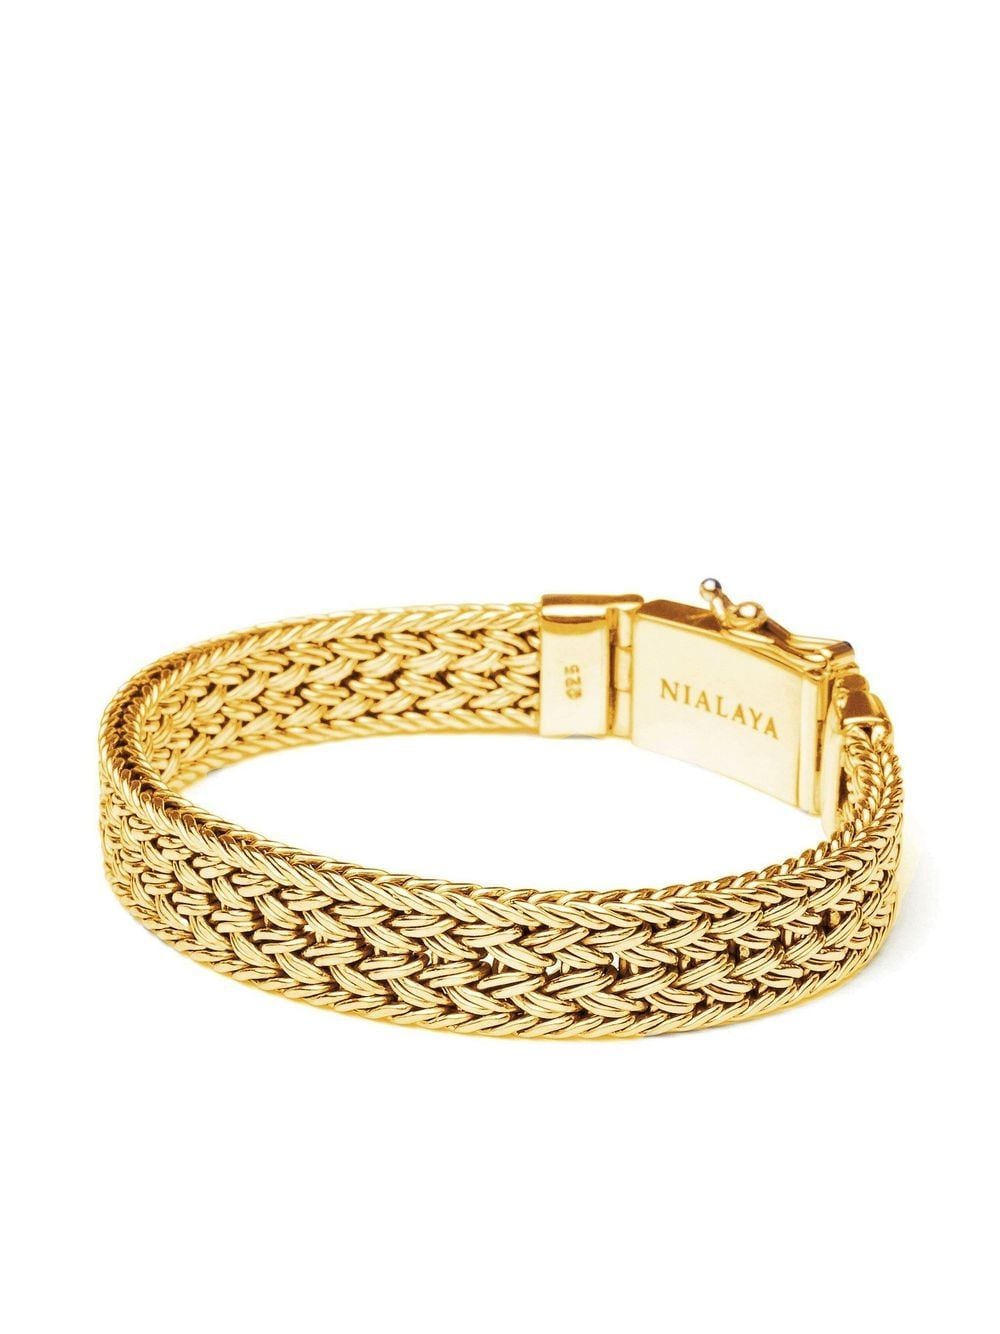 Nialaya Jewelry Braided chain bracelet - Gold von Nialaya Jewelry